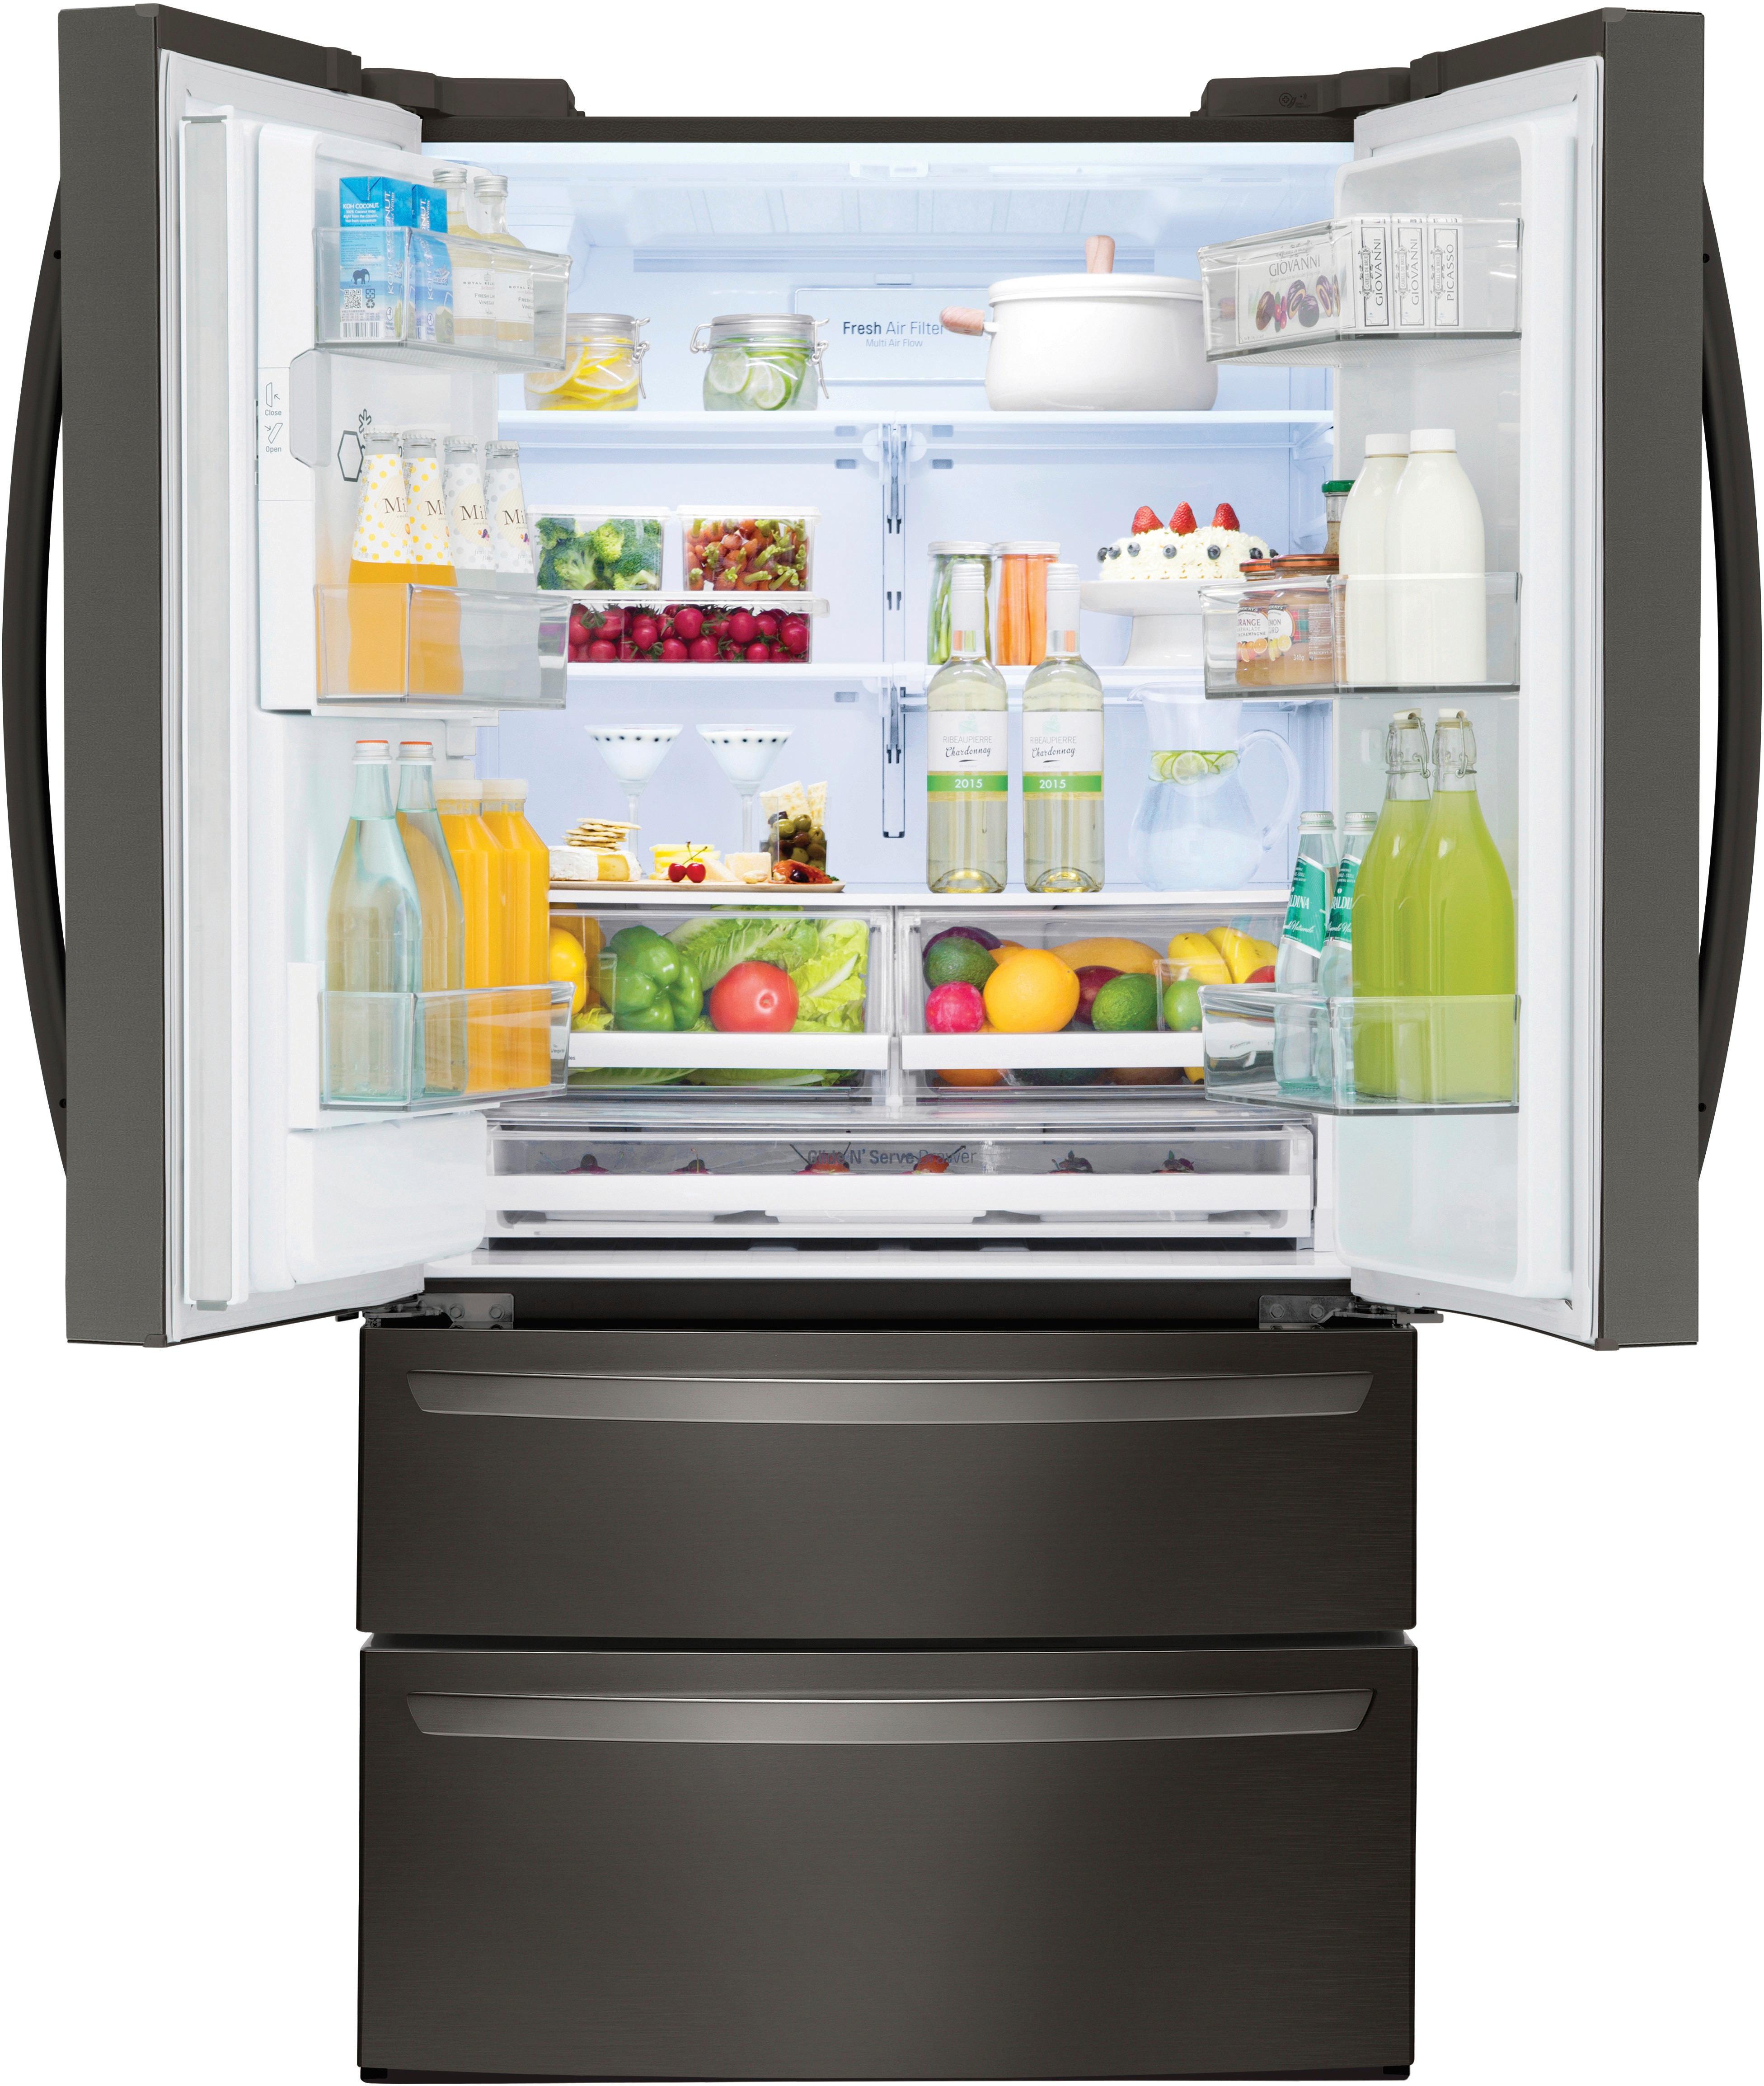 Customer Reviews Lg 27 8 Cu Ft 4 Door French Door Smart Refrigerator With Smart Cooling